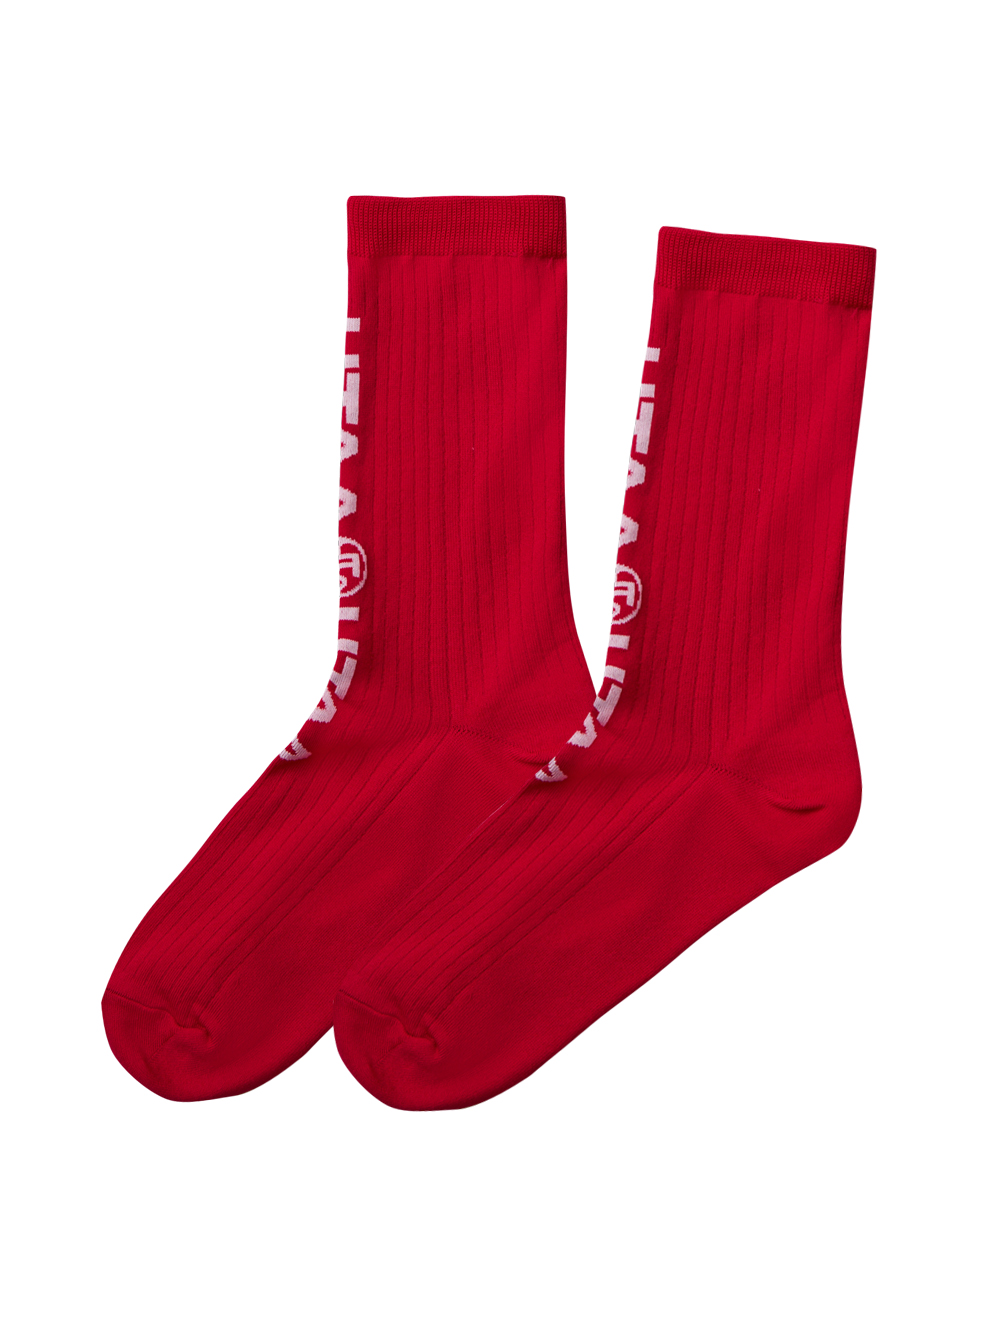 UTAA Double Logo Socks : Pink  (UC0GSF142PK)